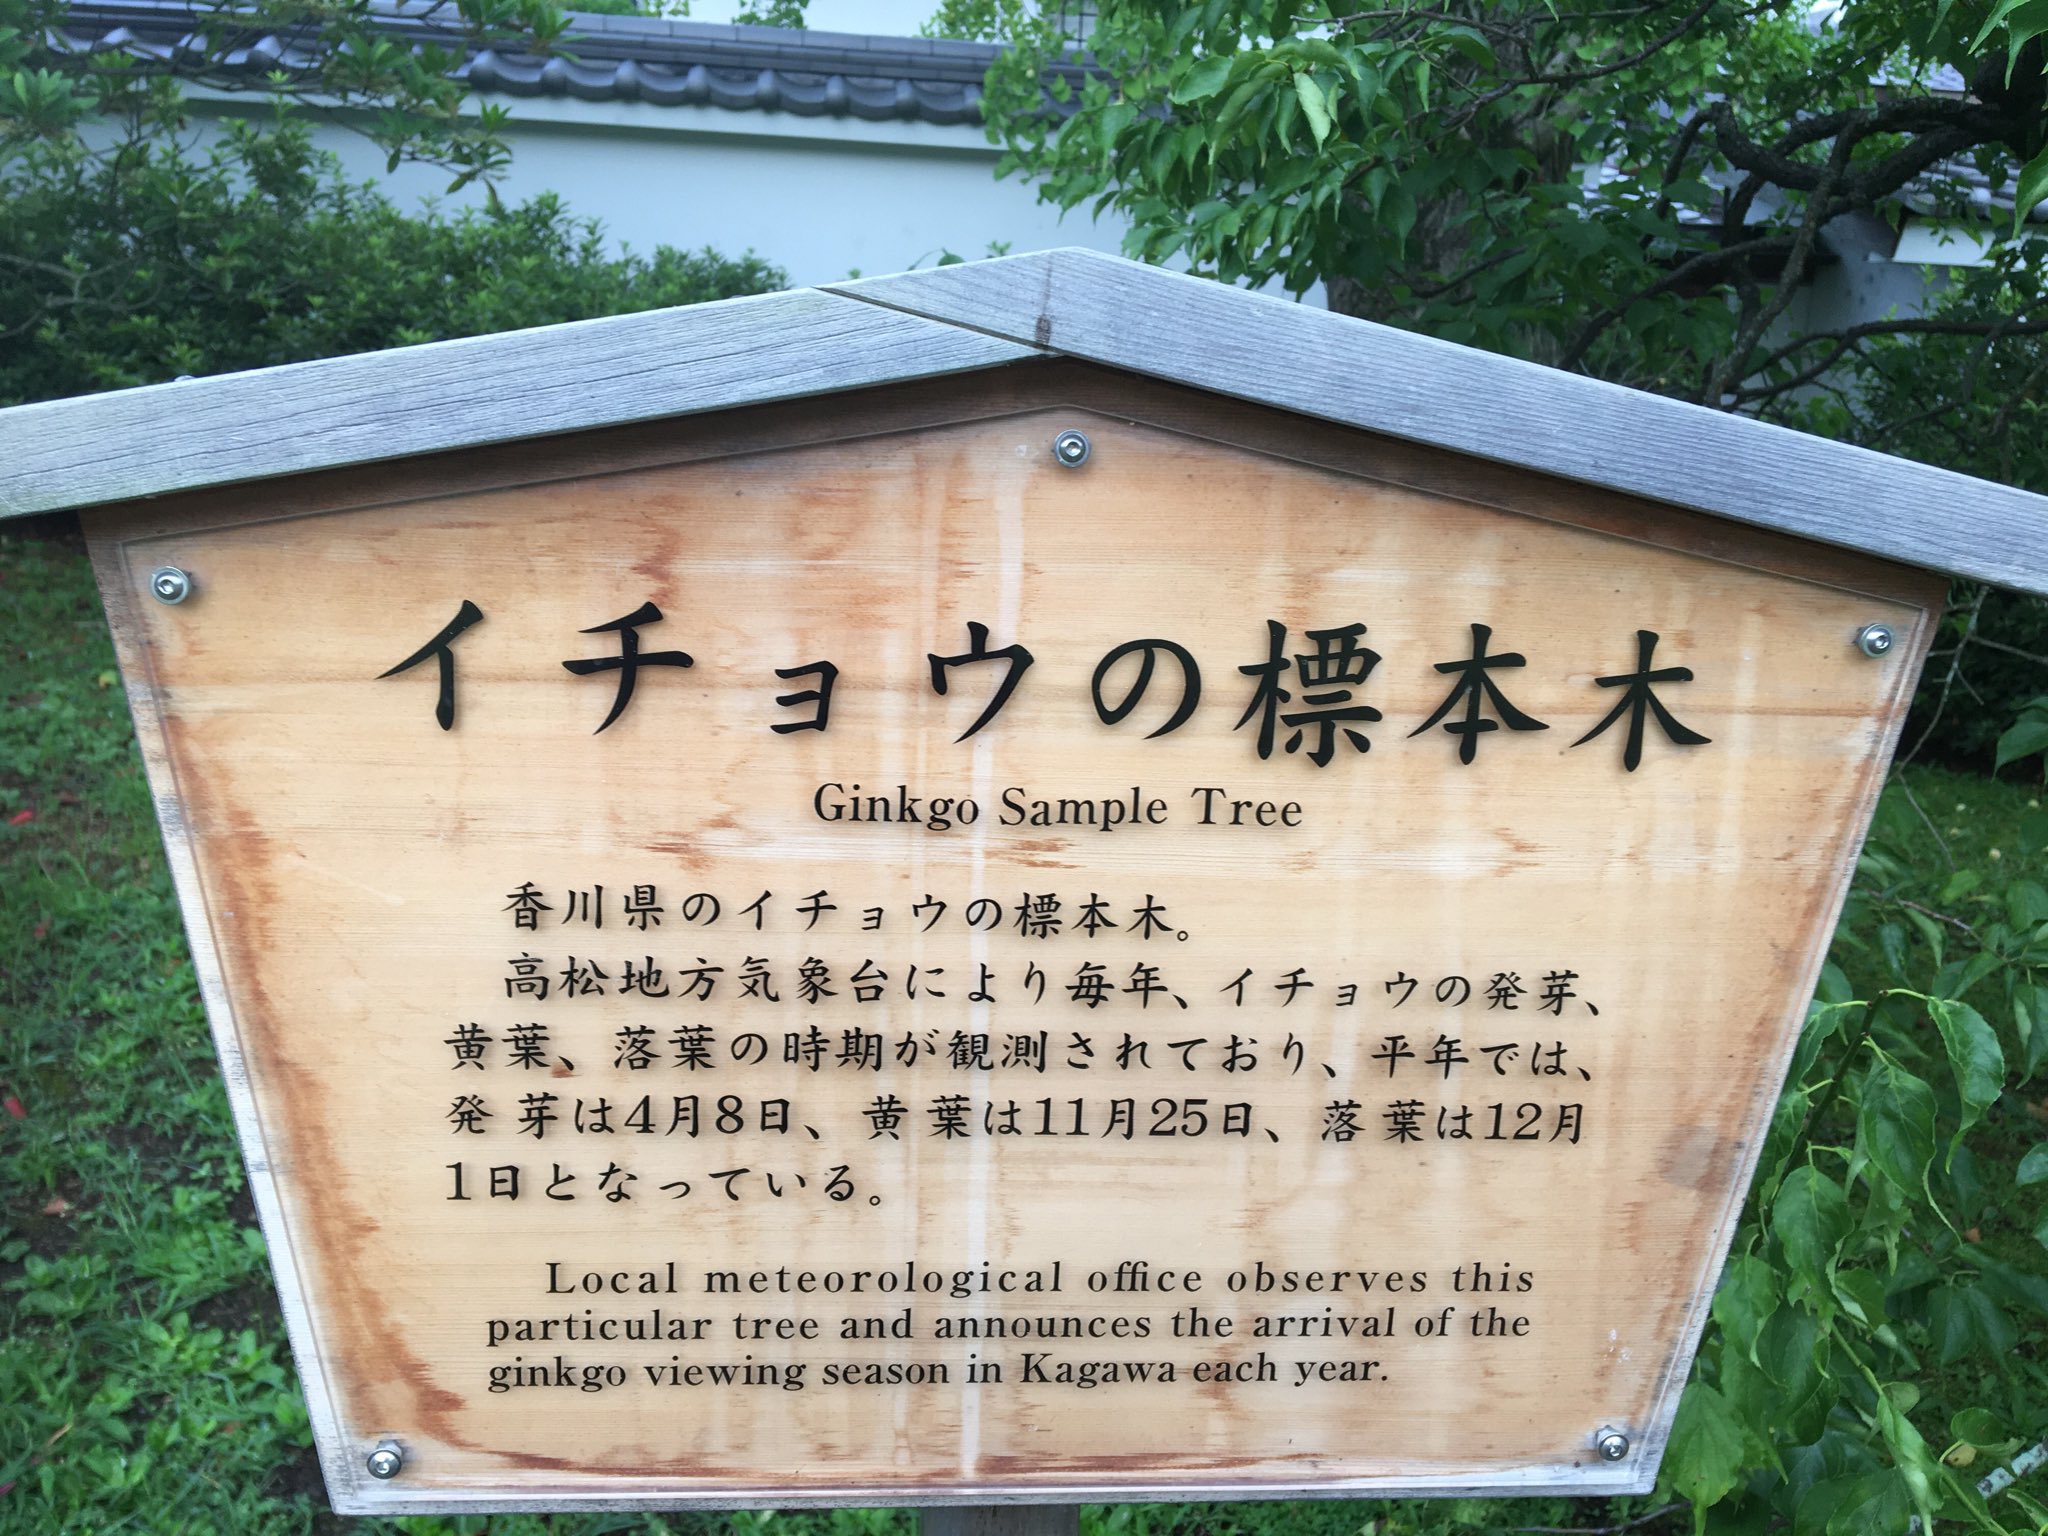 Kokogaku 中1日 30日の栗林公園 高松 イチョウの標本木に実がついている 季節は梅雨明けと夏を飛び越して秋 栗林公園 イチョウ